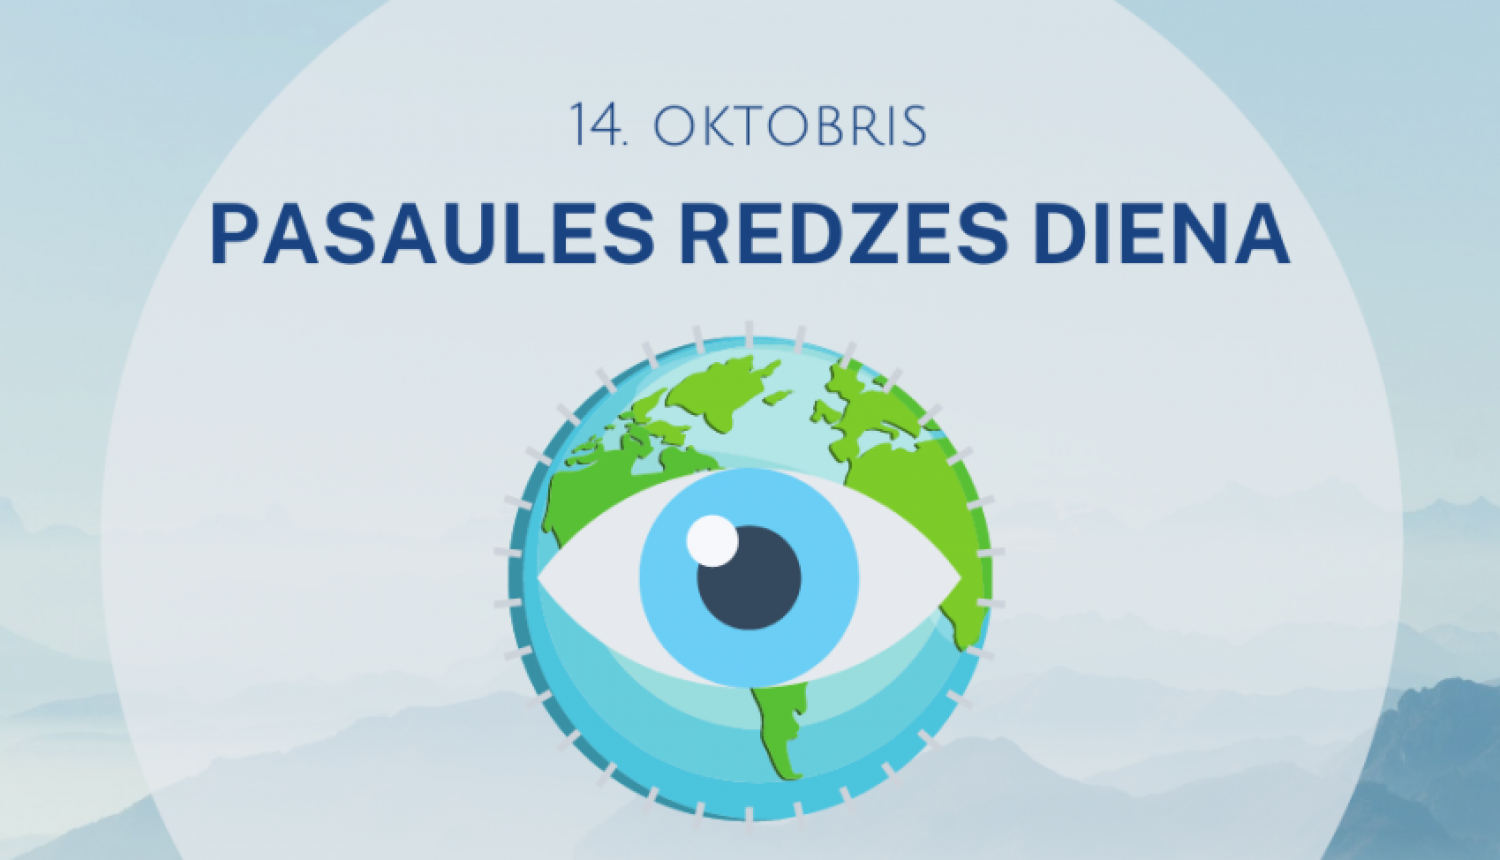 14. oktobrī – Pasaules redzes diena. Rūpējies par savu redzi!